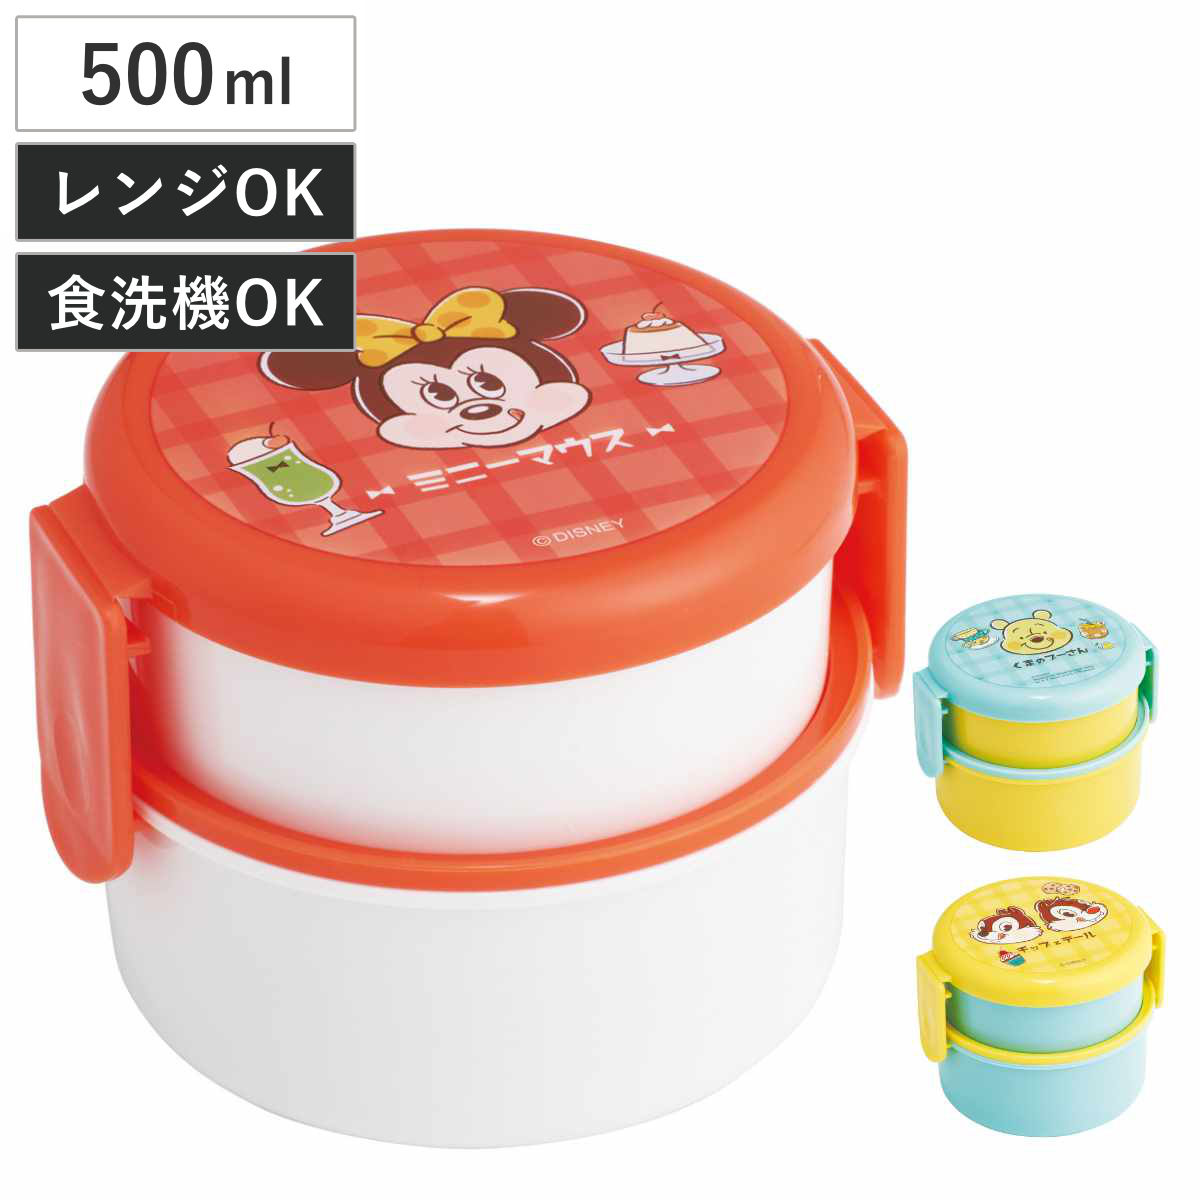 お弁当箱 抗菌丸型ランチボックス 2段 500ml 喫茶レトロシリーズ 